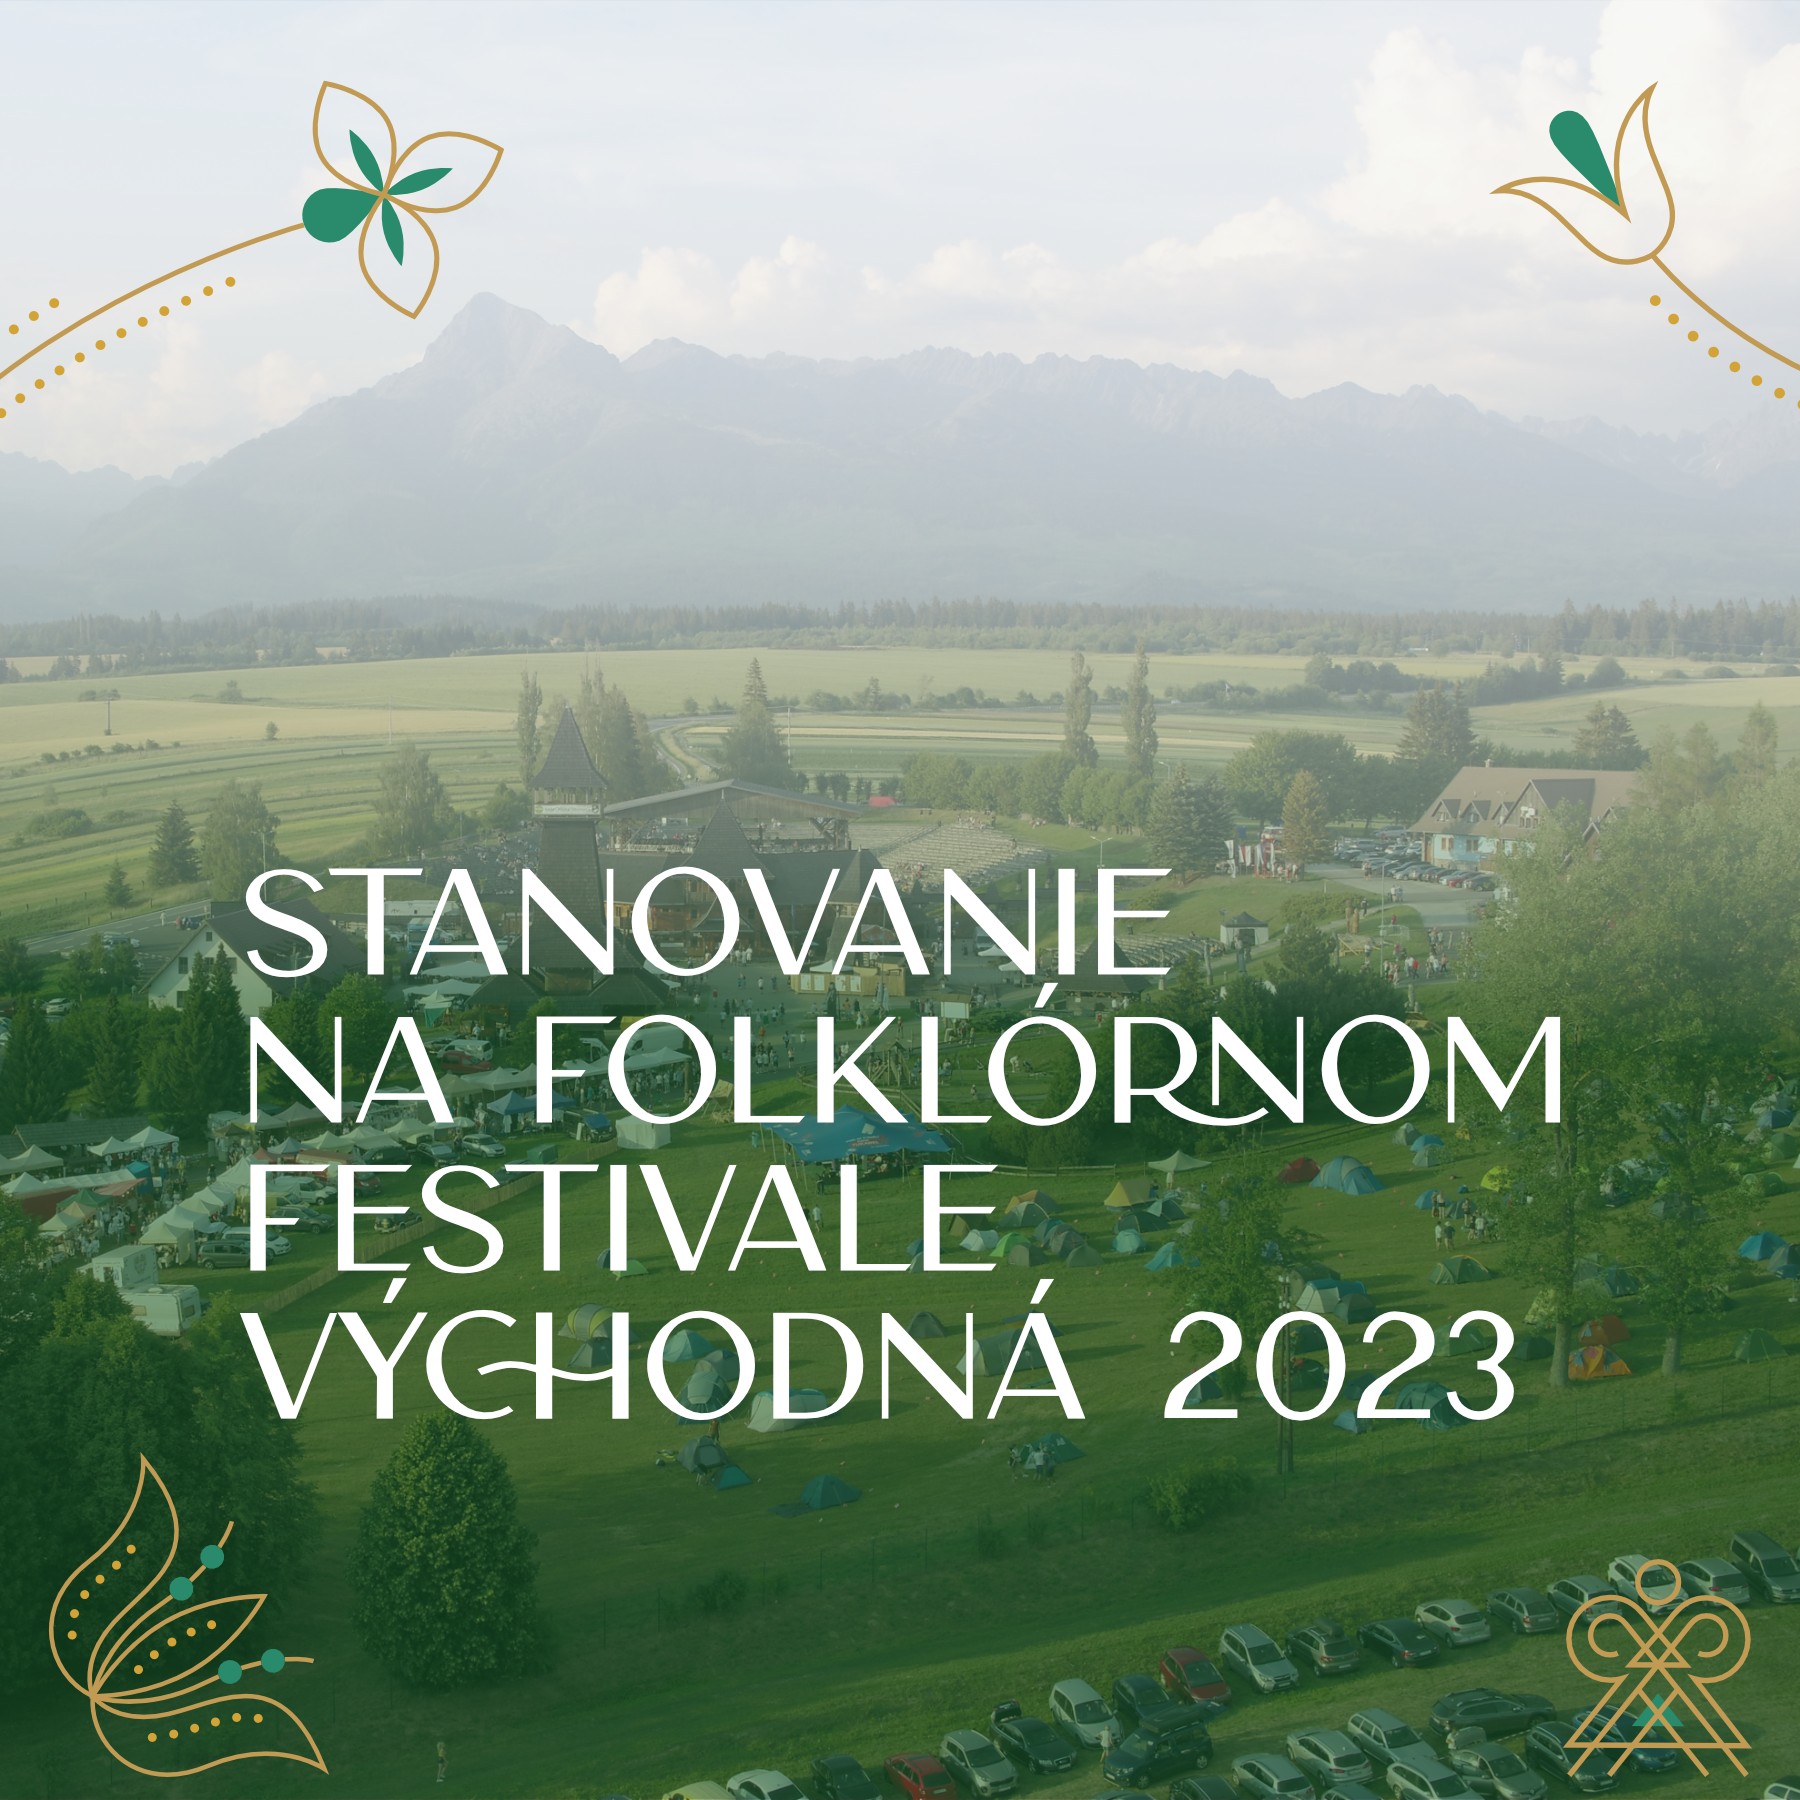 Stanovanie na folklórnom festivale Východná 2023